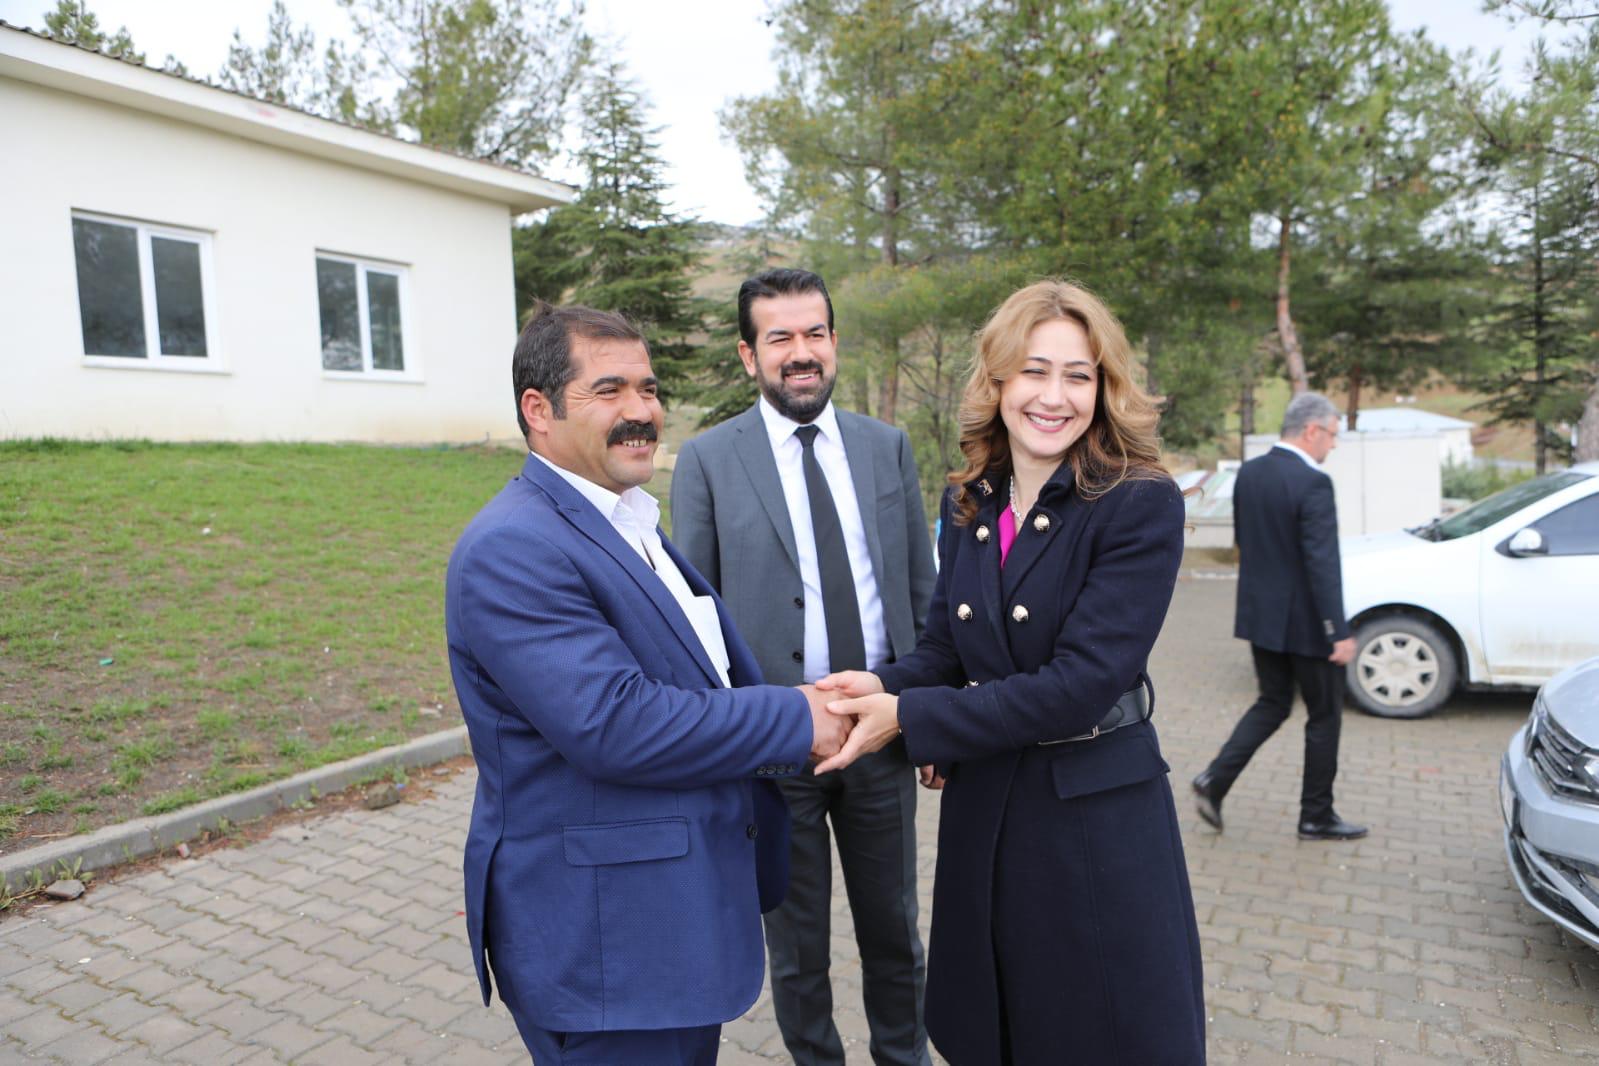 MHP Milletvekili Adayı Karakoç’a Bertiz’de Yoğun İlgi